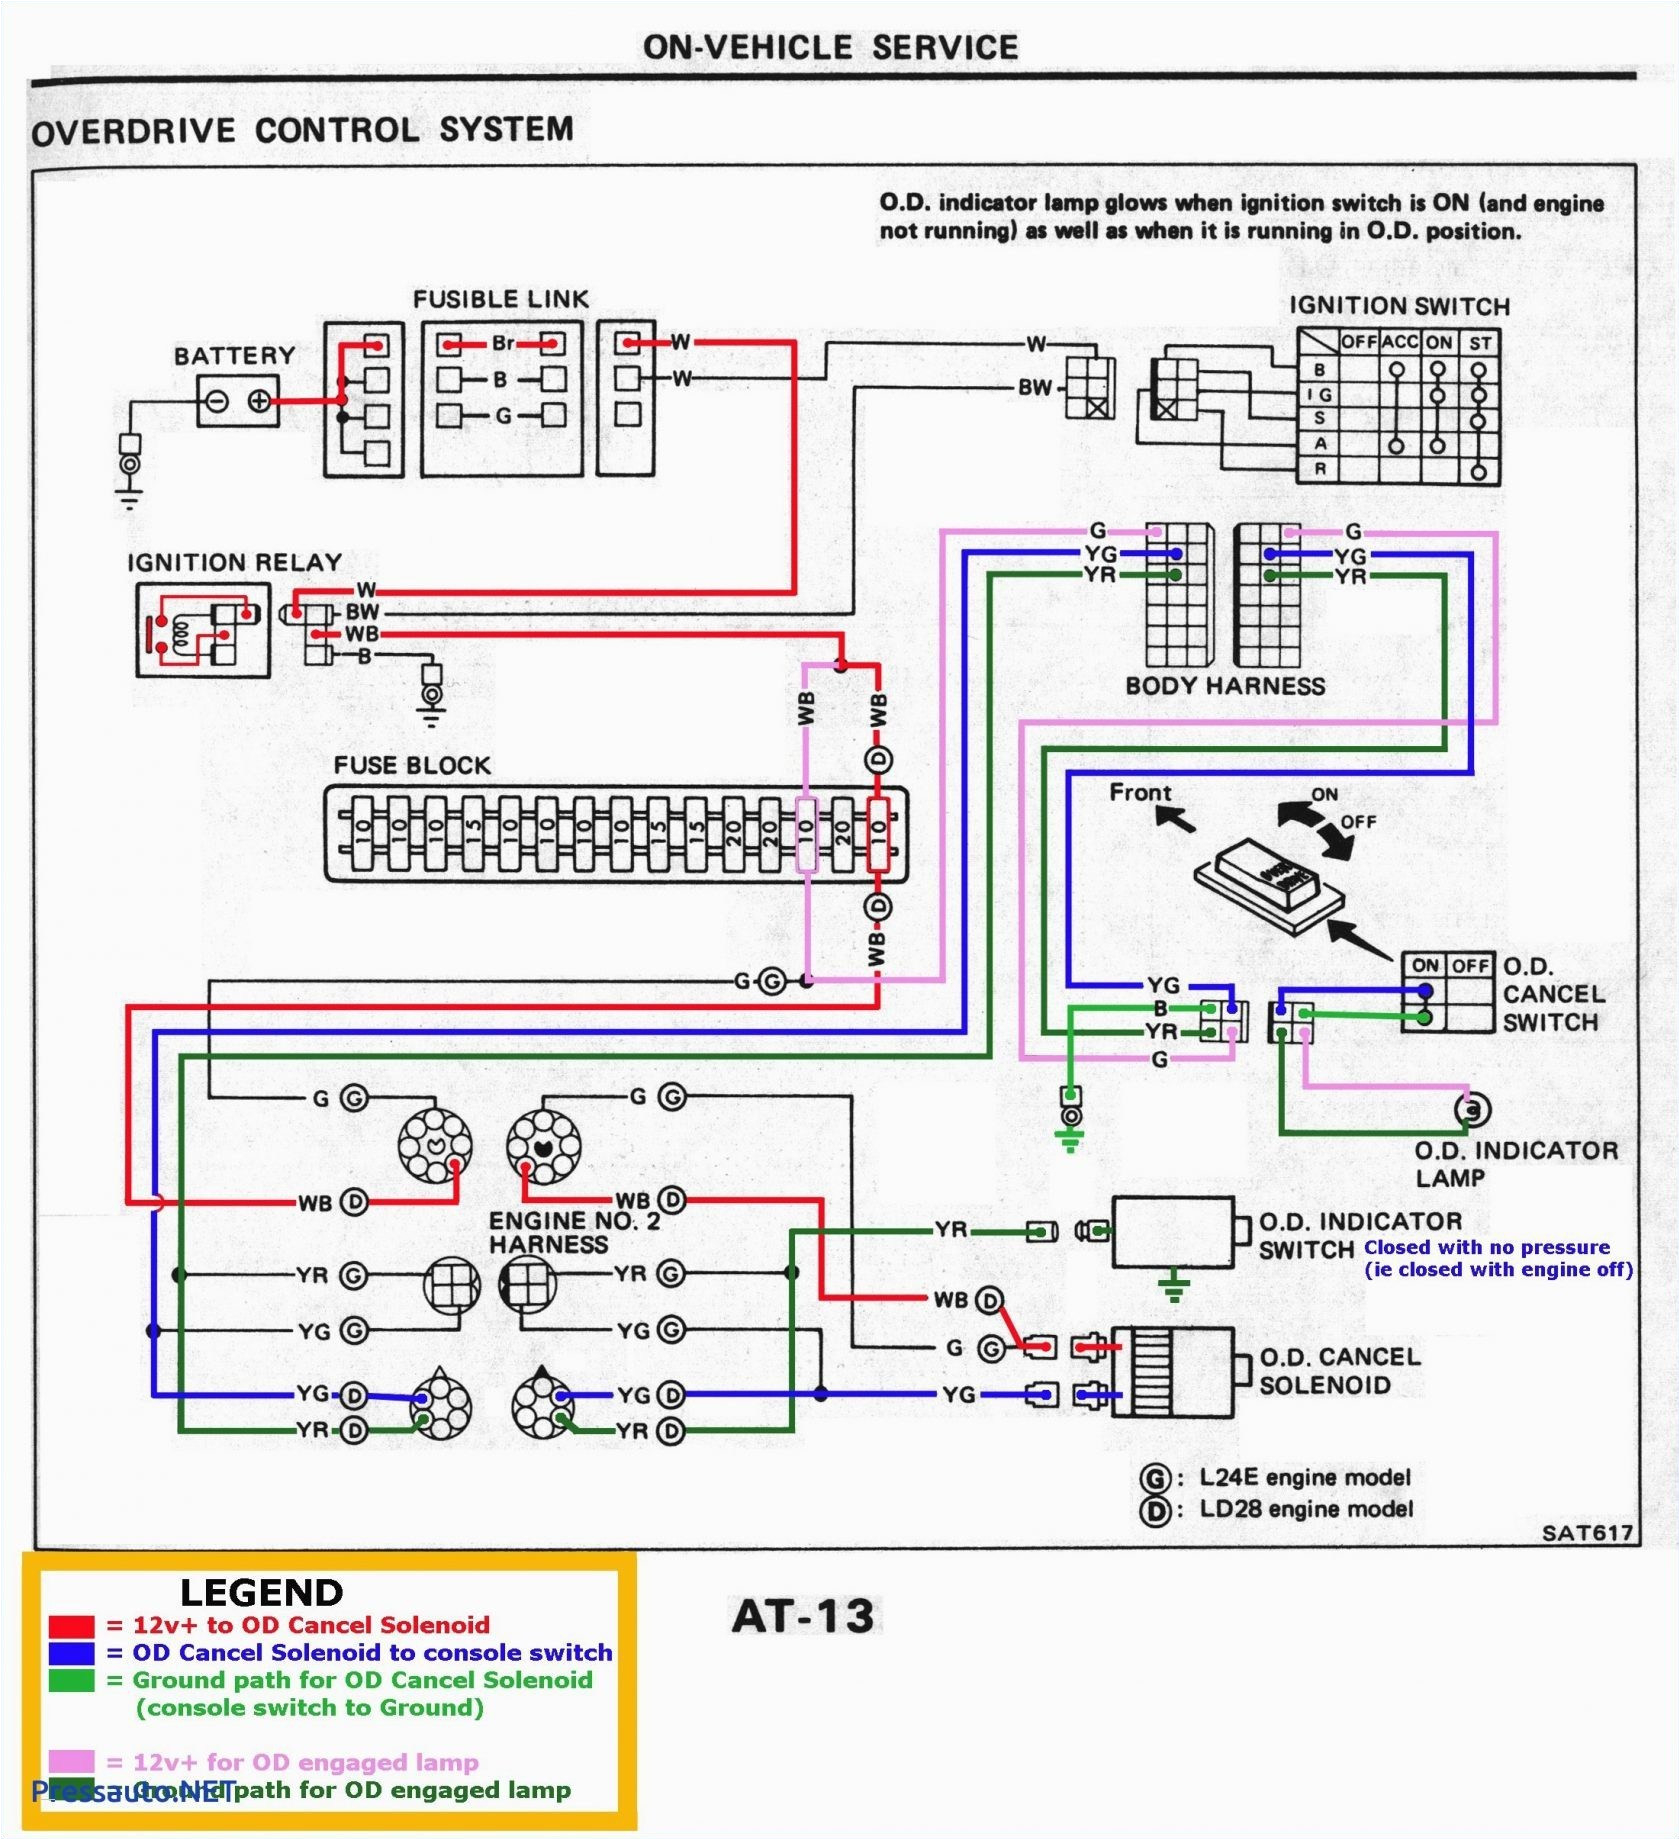 Backup Camera Wiring Diagram Look Right Backup Camera Wiring Diagram Look Right Fresh Building Relationships